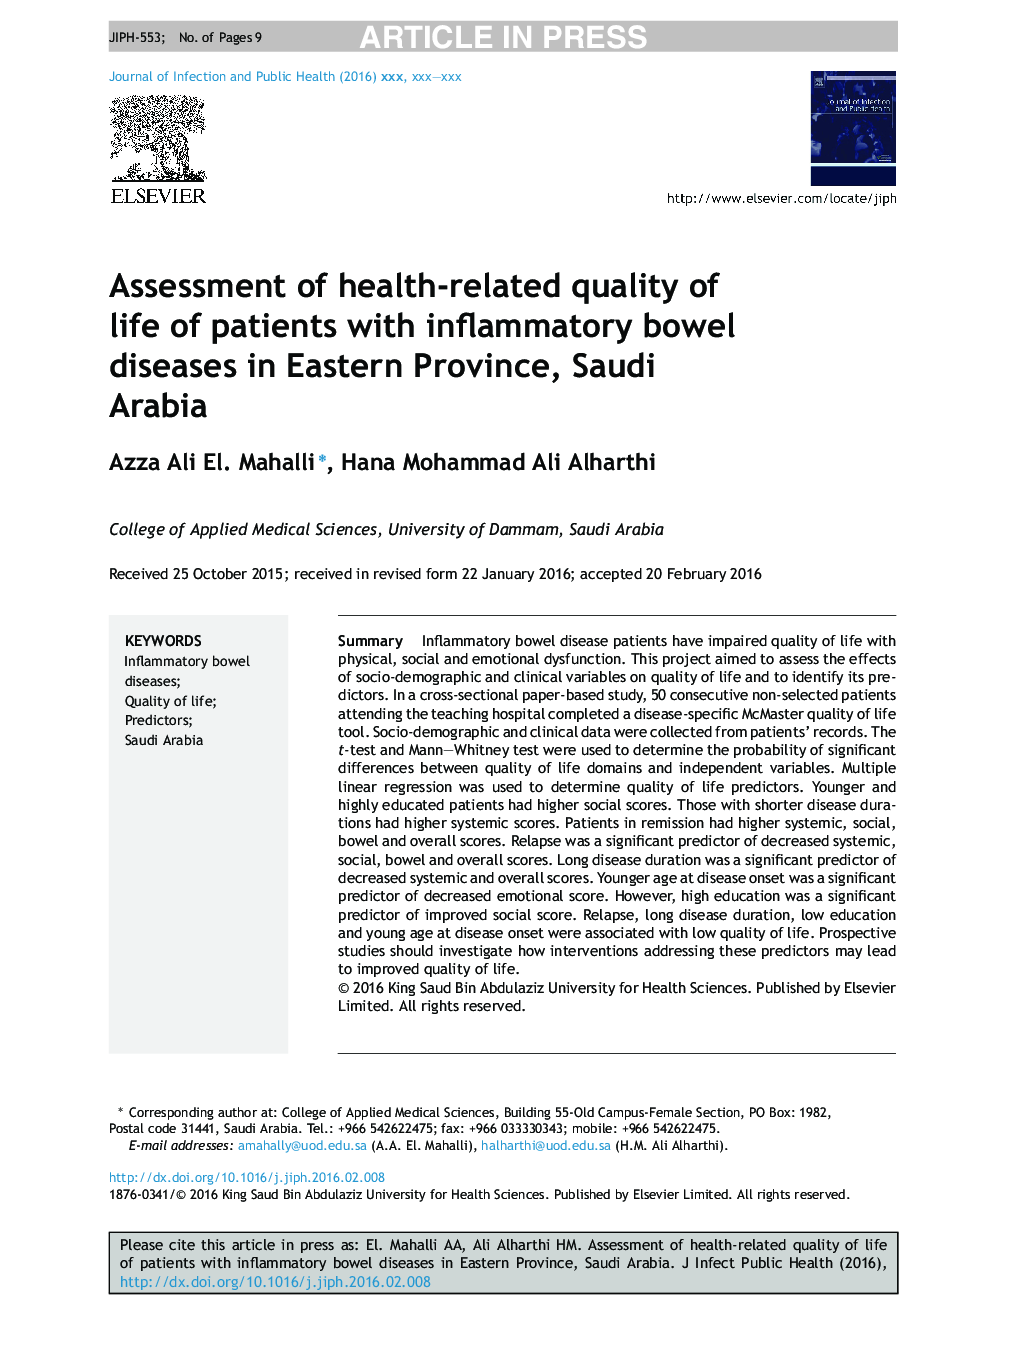 ارزیابی کیفیت زندگی مرتبط با سلامت بیماران مبتلا به بیماری التهابی روده در استان شرقی، عربستان سعودی 